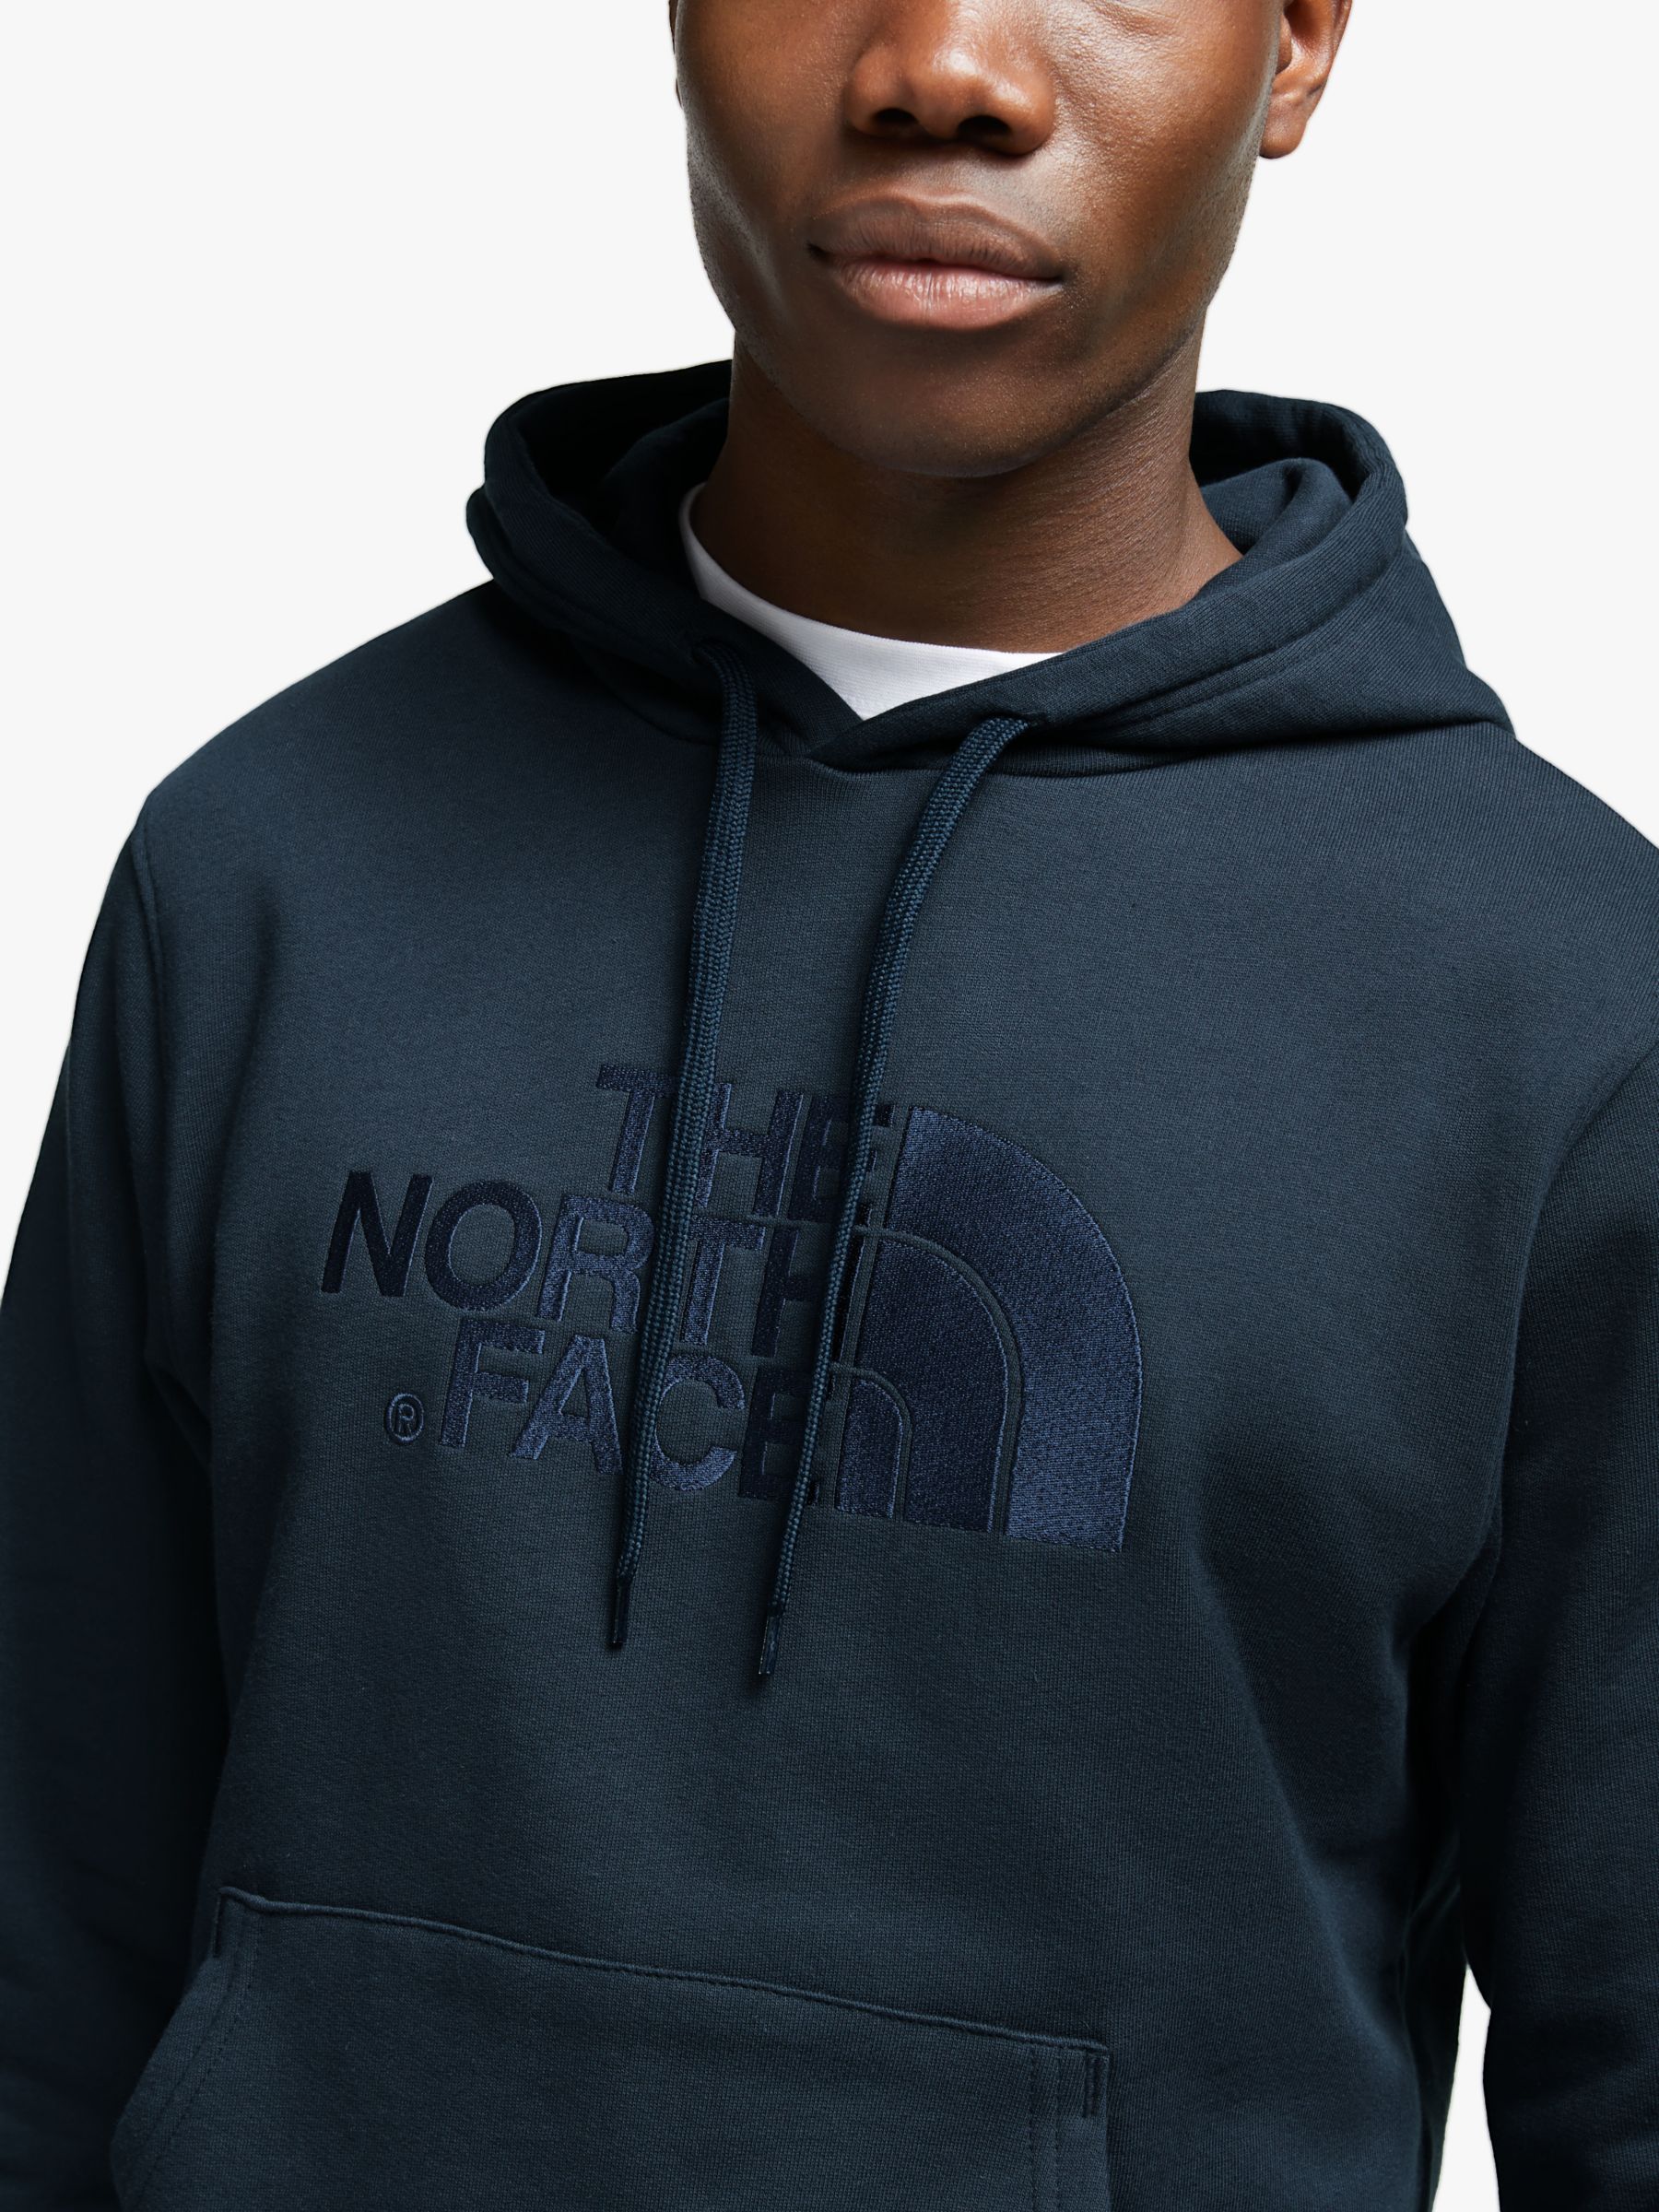 north face drew peak hoodie navy